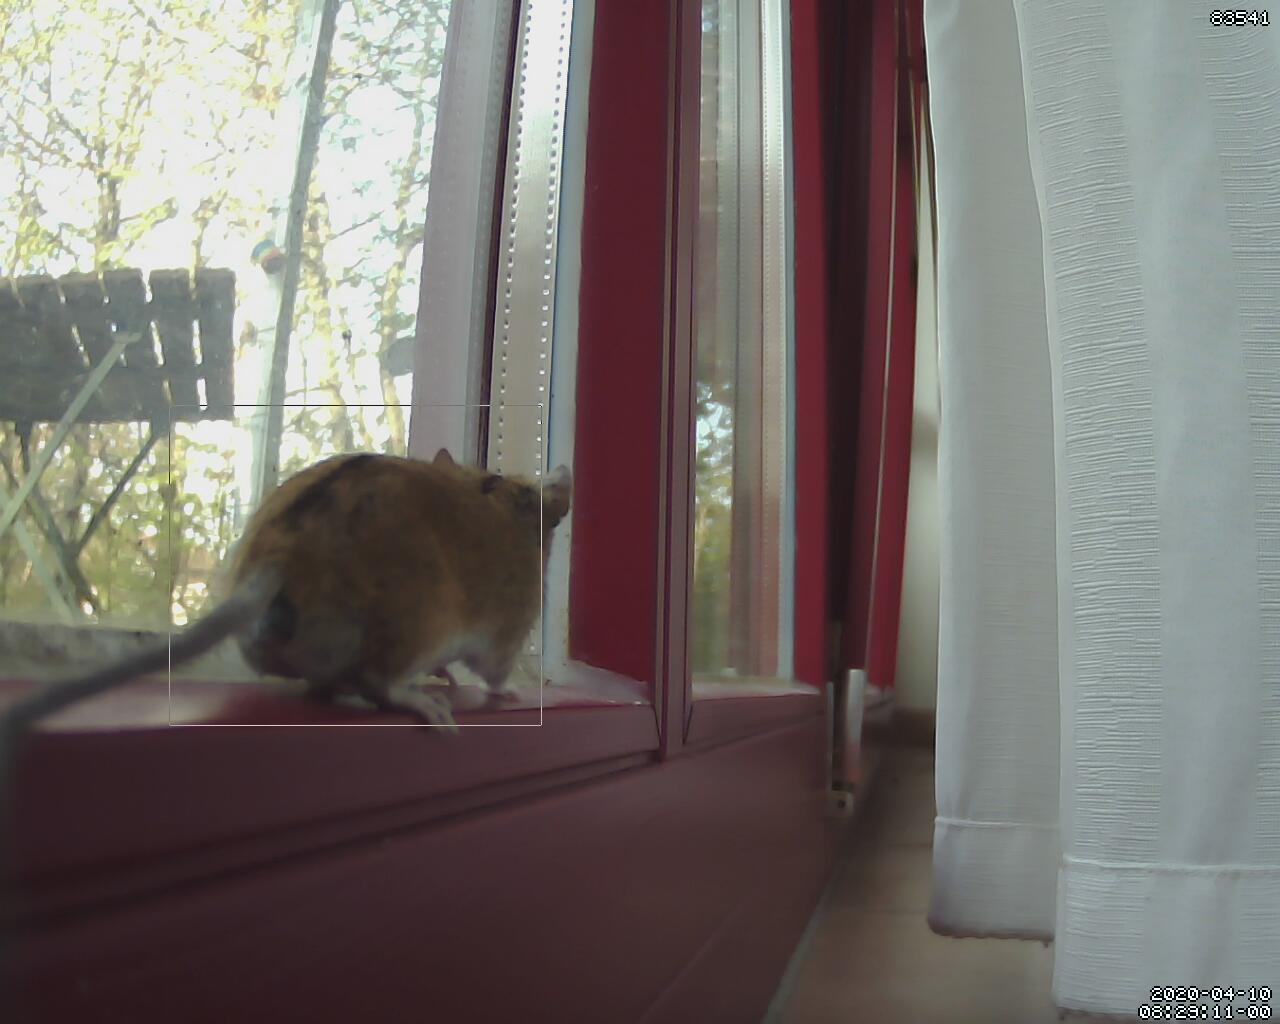 Azura brachte eine Maus ins Haus, die dann im Wohnzimmer von der CatCam beobachtet wurde.